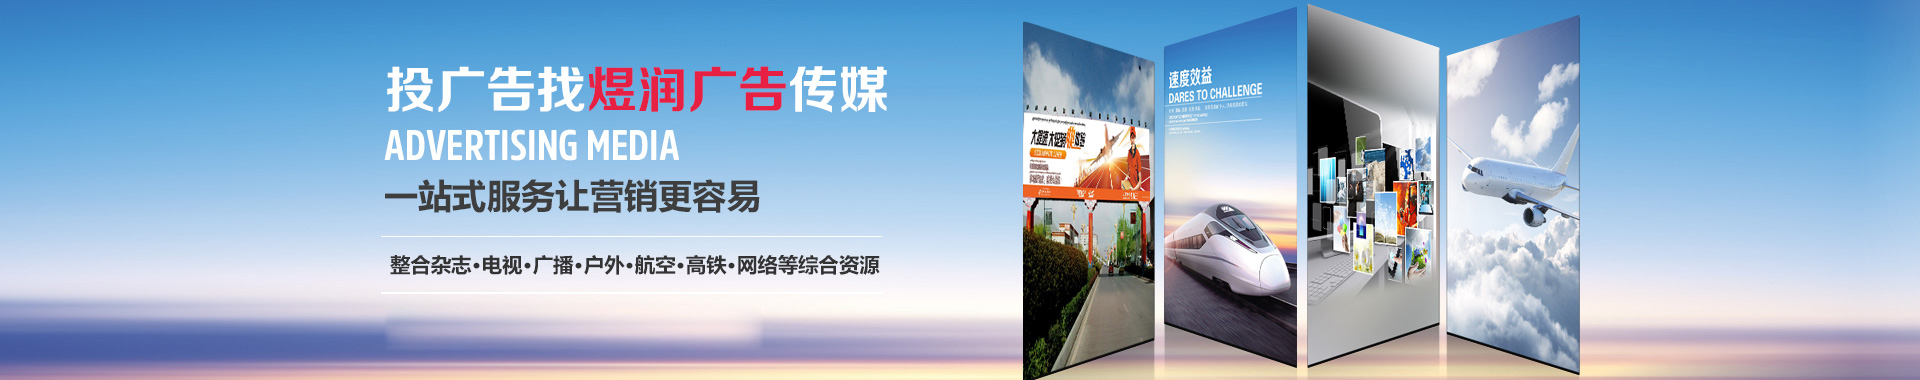 上海电视剧频道广告价格